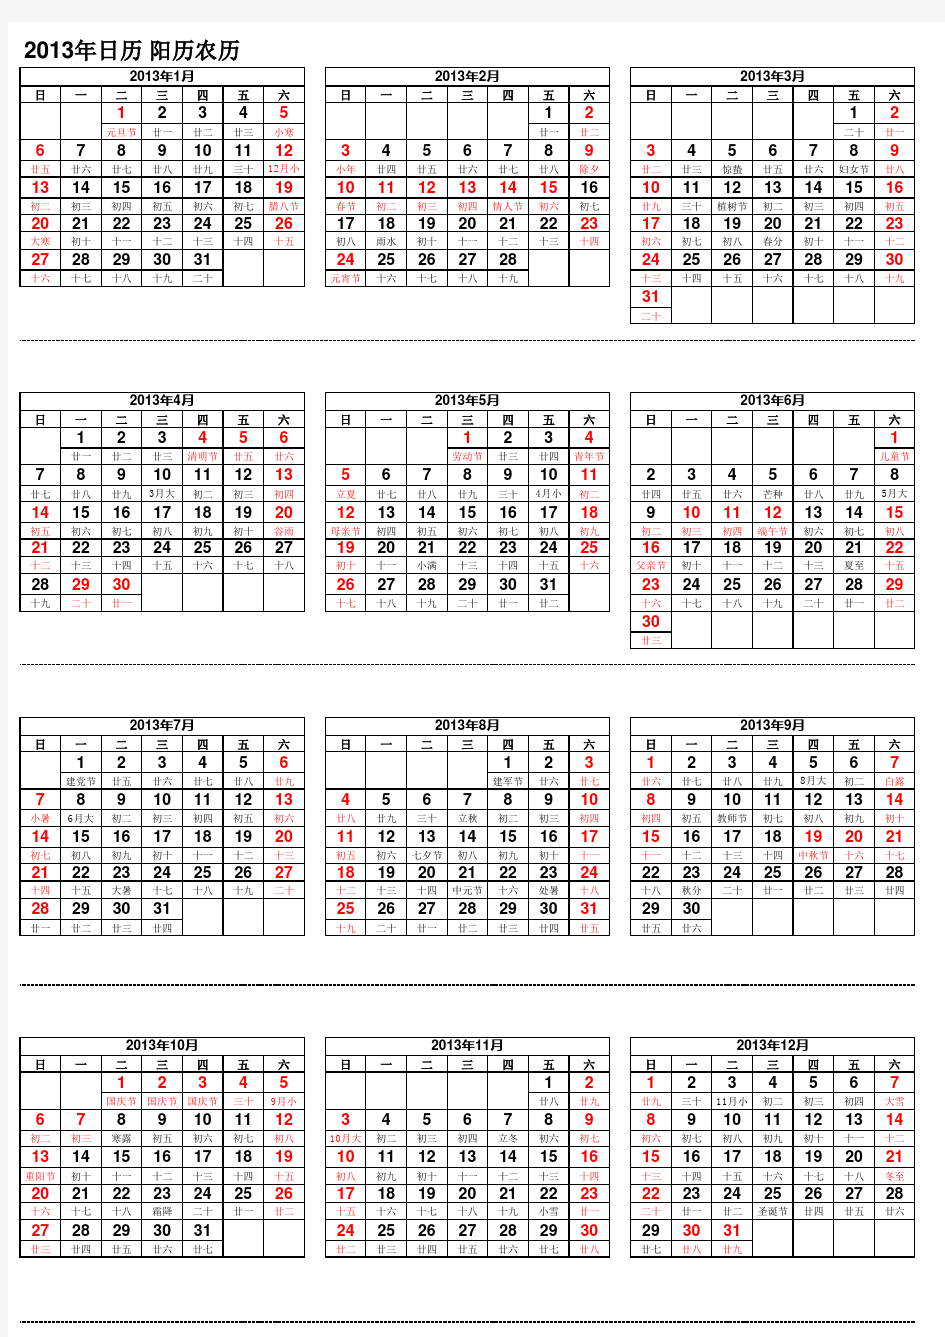 2013年日历 阳历农历对照表